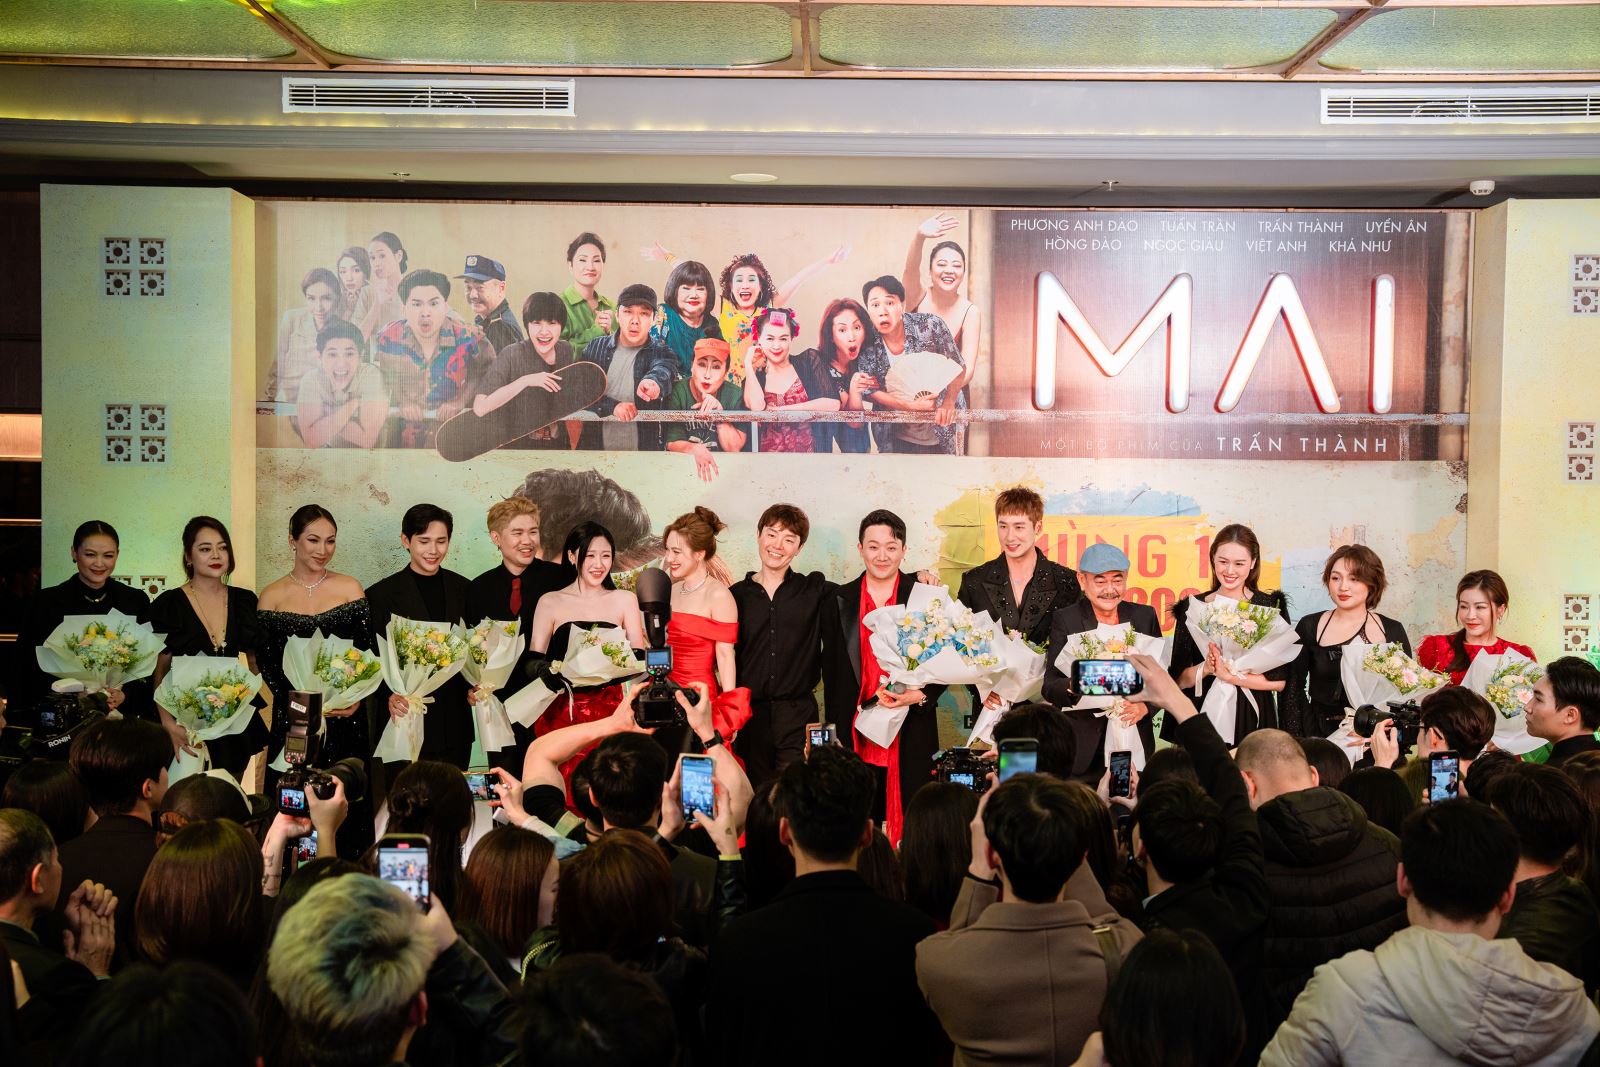 Phim “Mai” ra mắt khán giả Hà Nội trước khi khởi chiếu chính thức ngày mùng 1 Tết Giáp Thìn